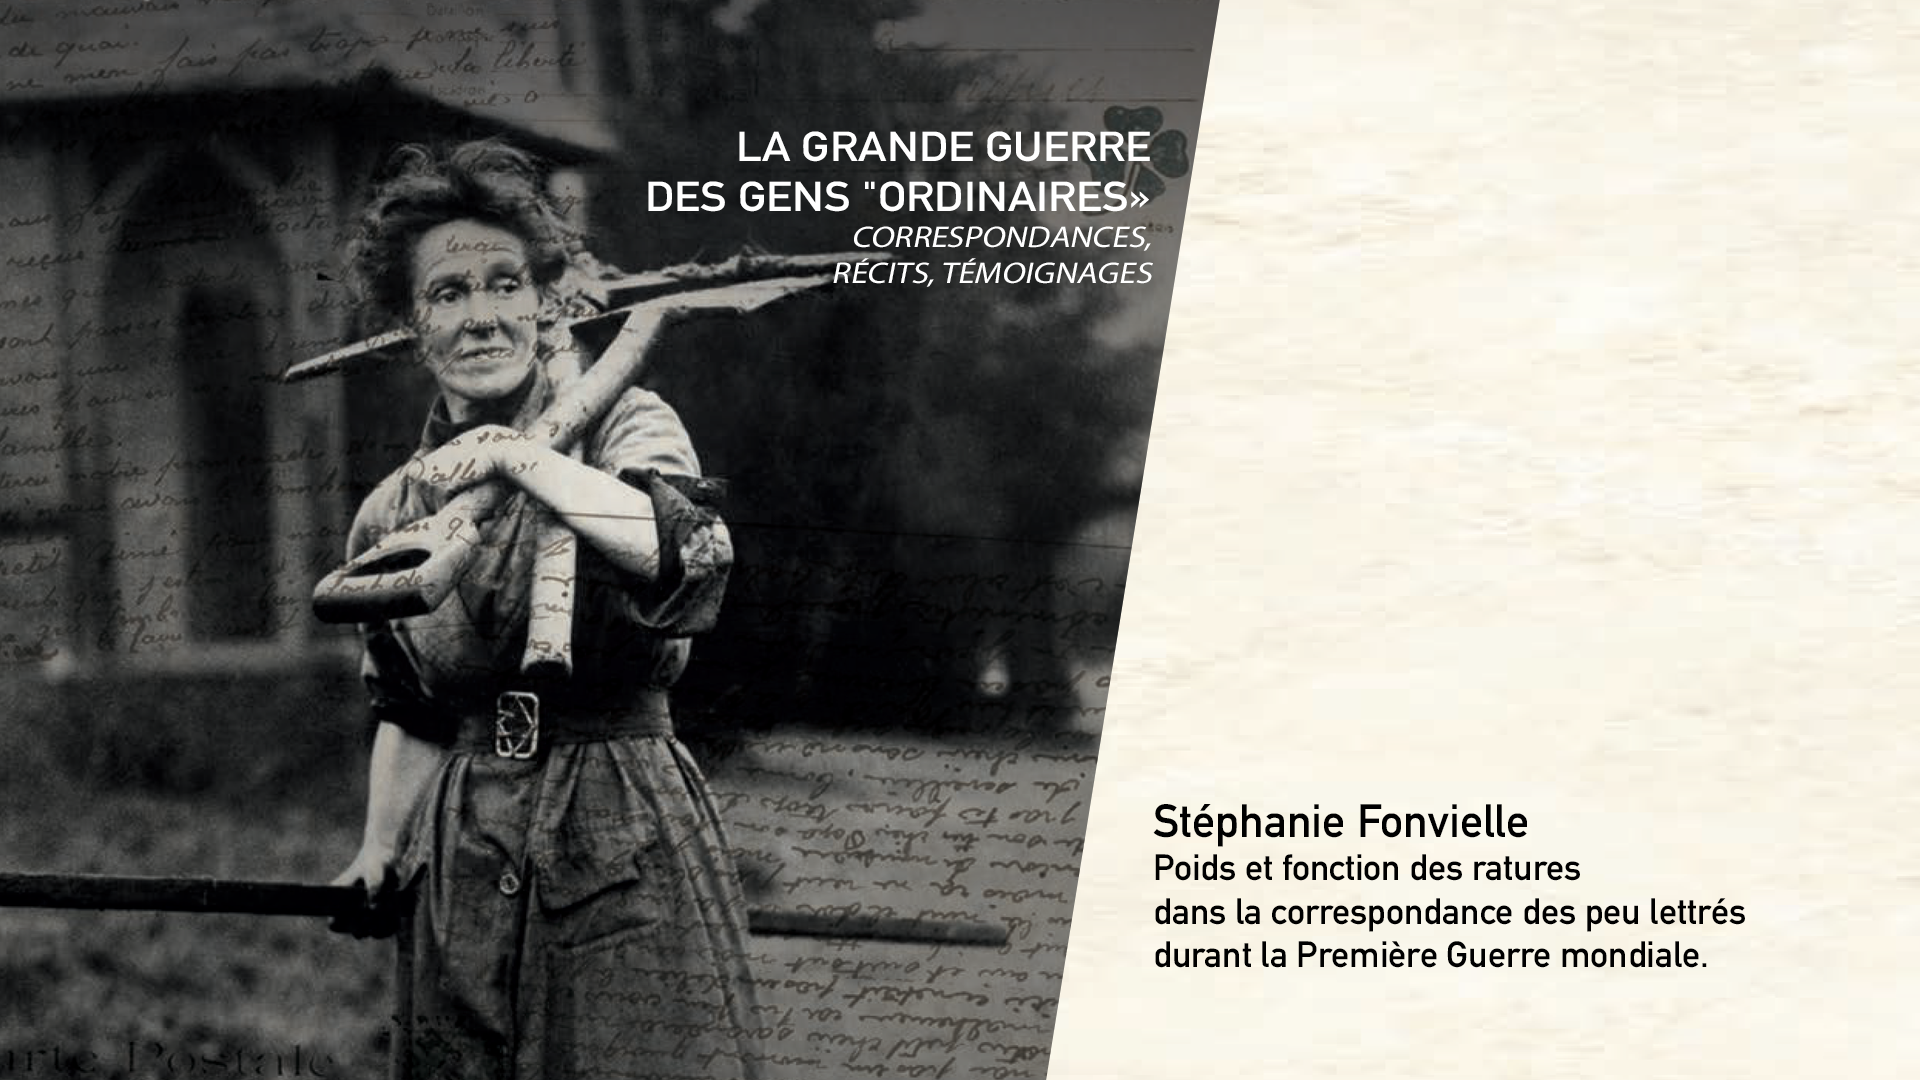 Stéphanie Fonvielle - Poids et fonction des ratures dans la correspondance des peu lettrés durant la Première Guerre mondiale.